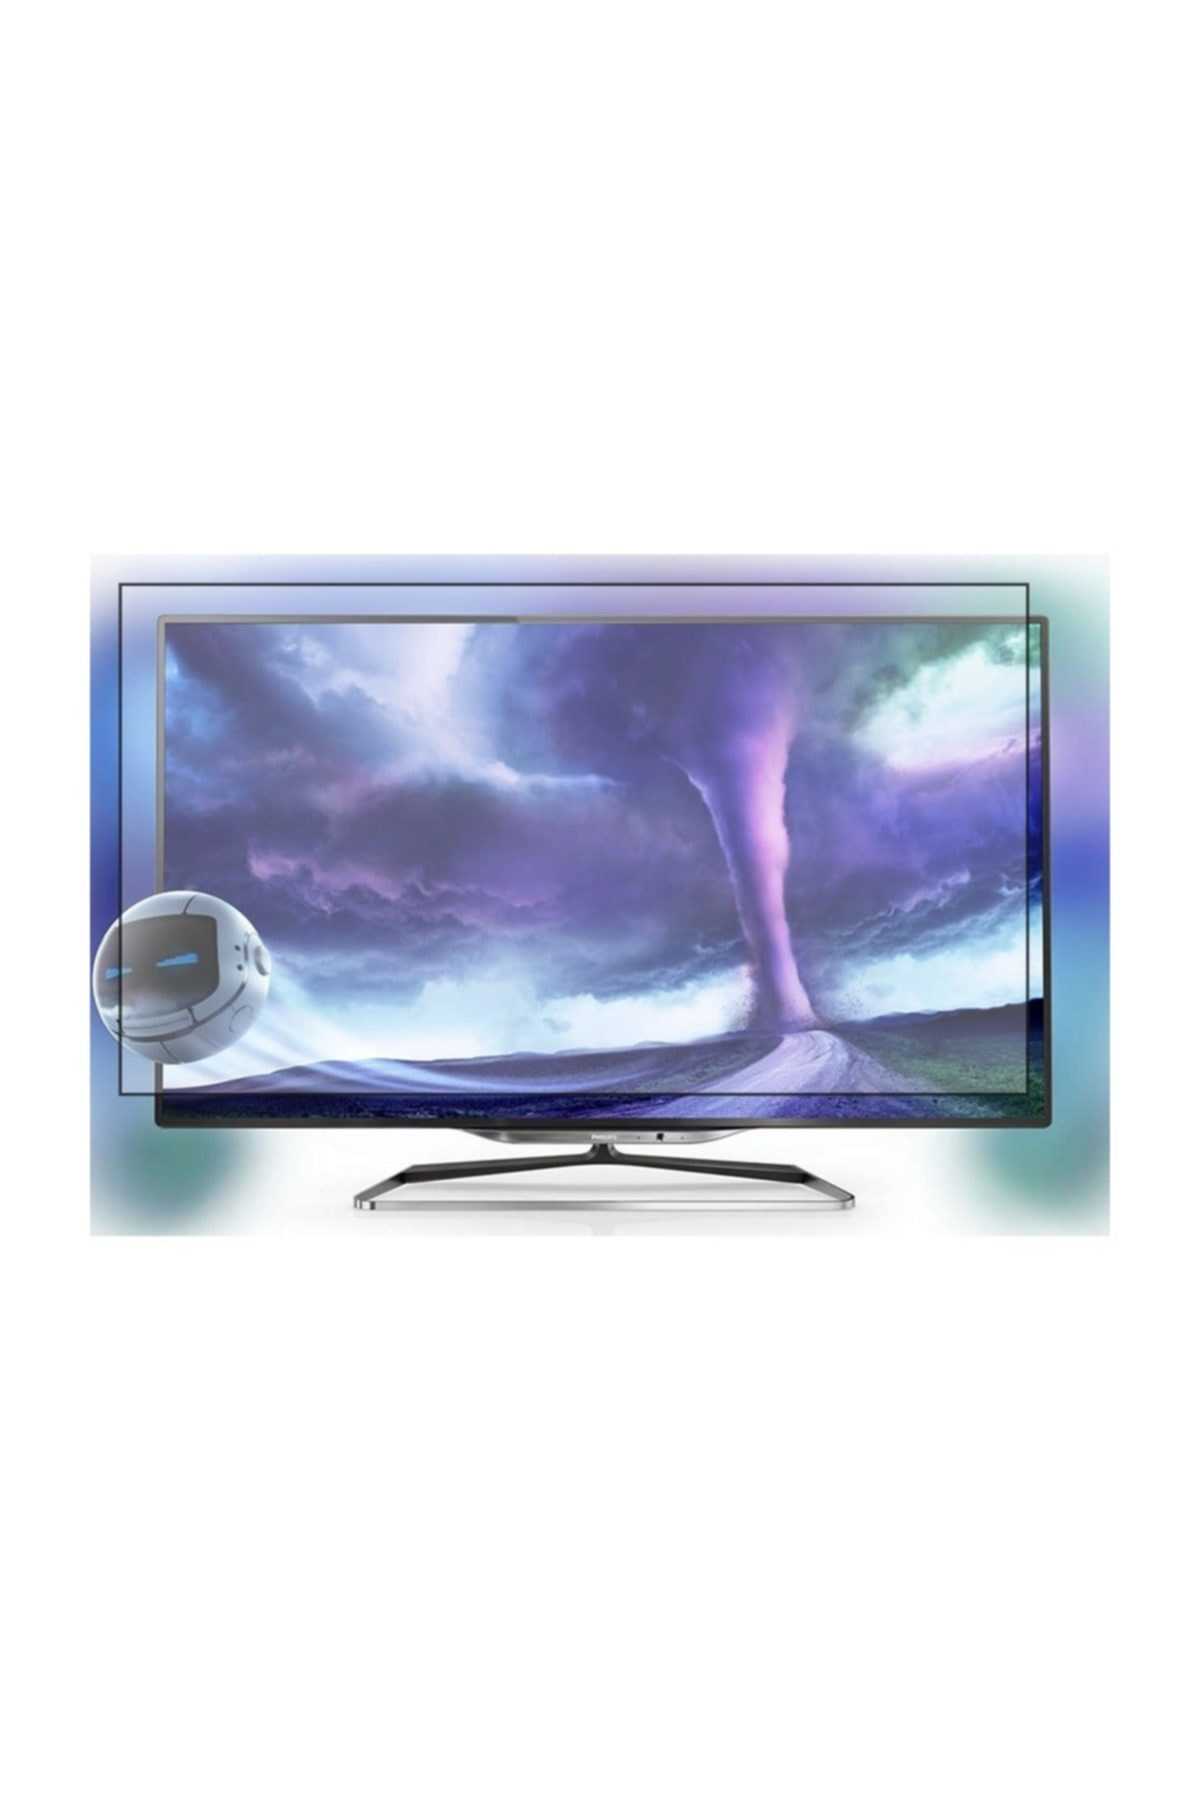 Philips 55pfl7108h - купить , скидки, цена, отзывы, обзор, характеристики - телевизоры